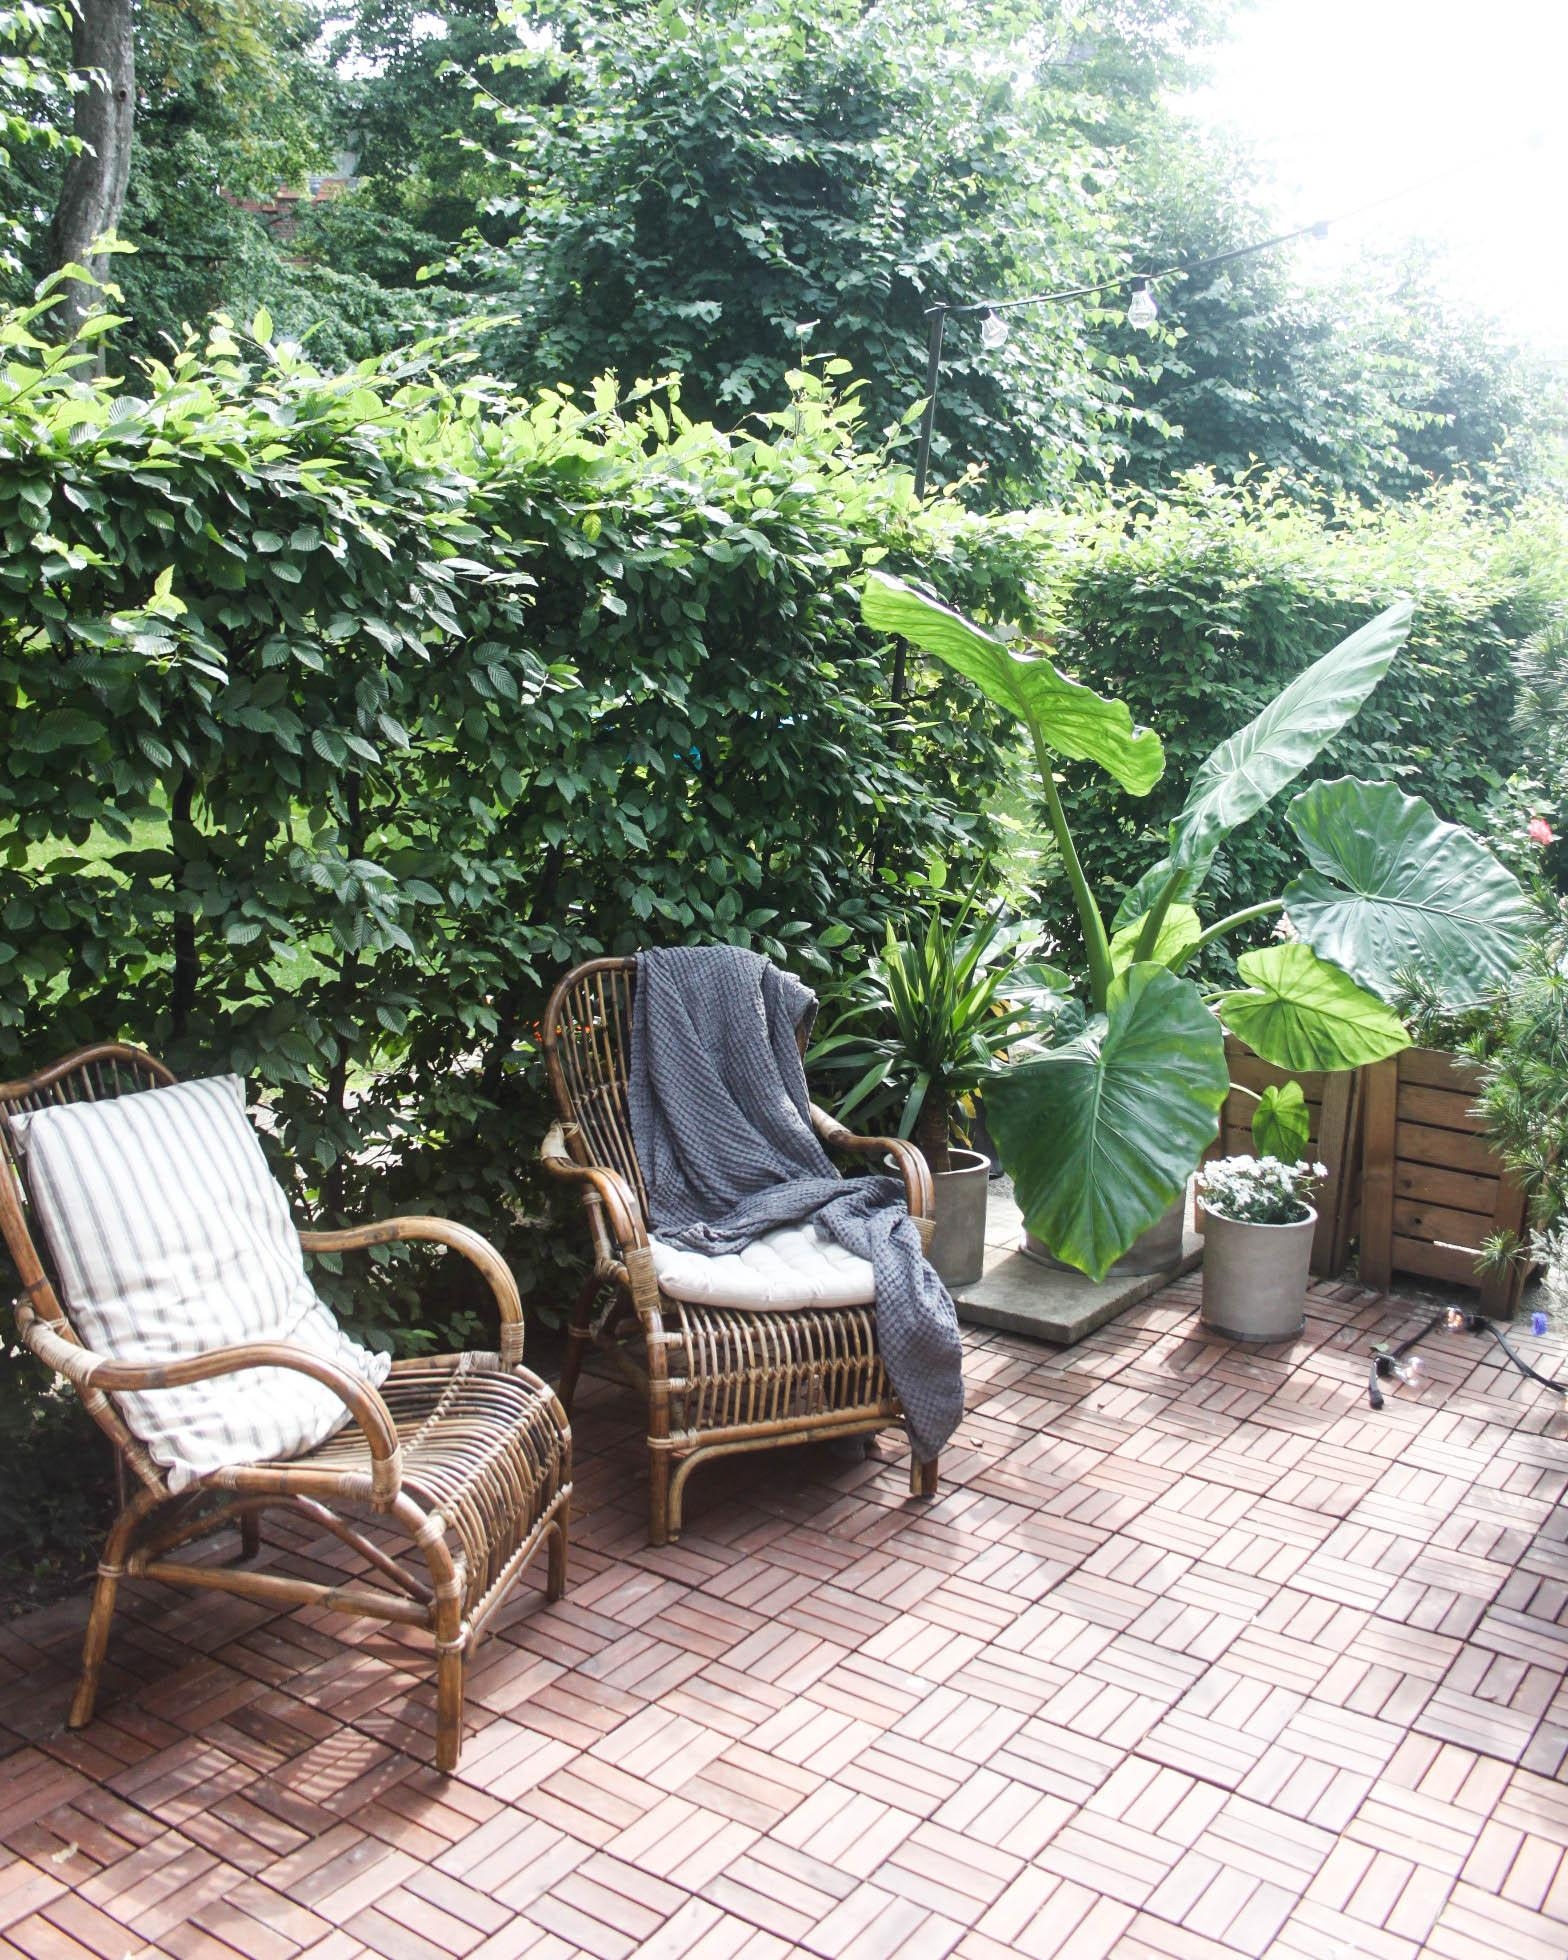 Möbel aus Rattan, große Pflanzen & natürliche Textilien sind absolute Outdoor-Essentials  #terrassenmakeover #terrasse
